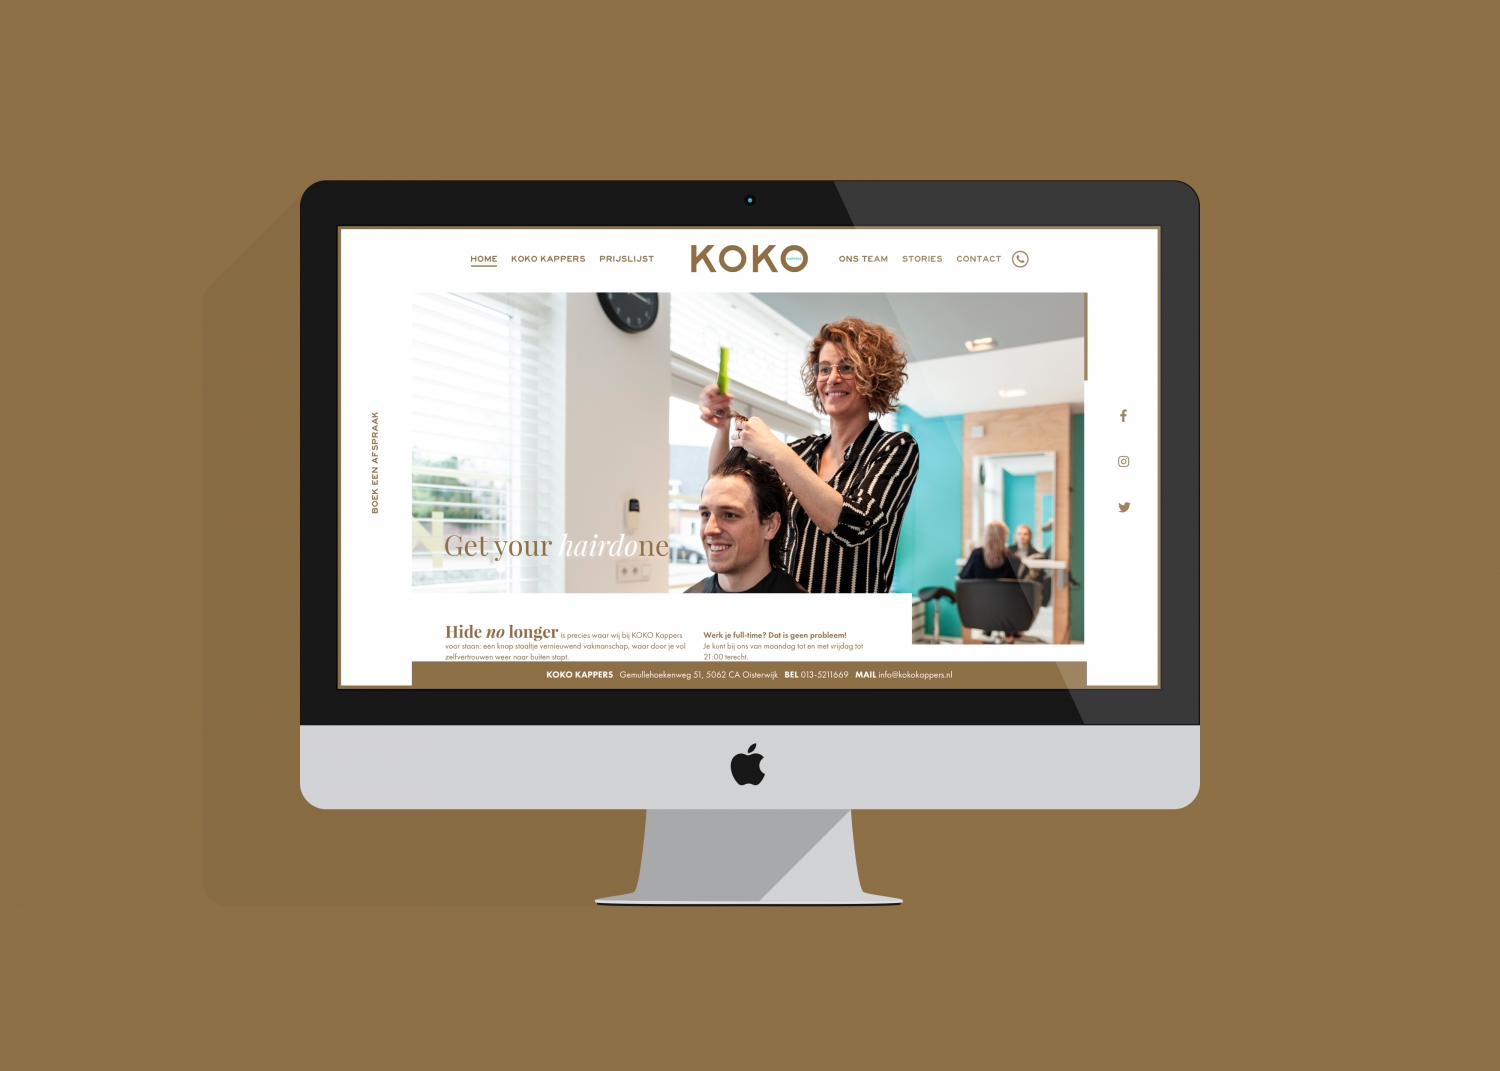 Koko kappers website design